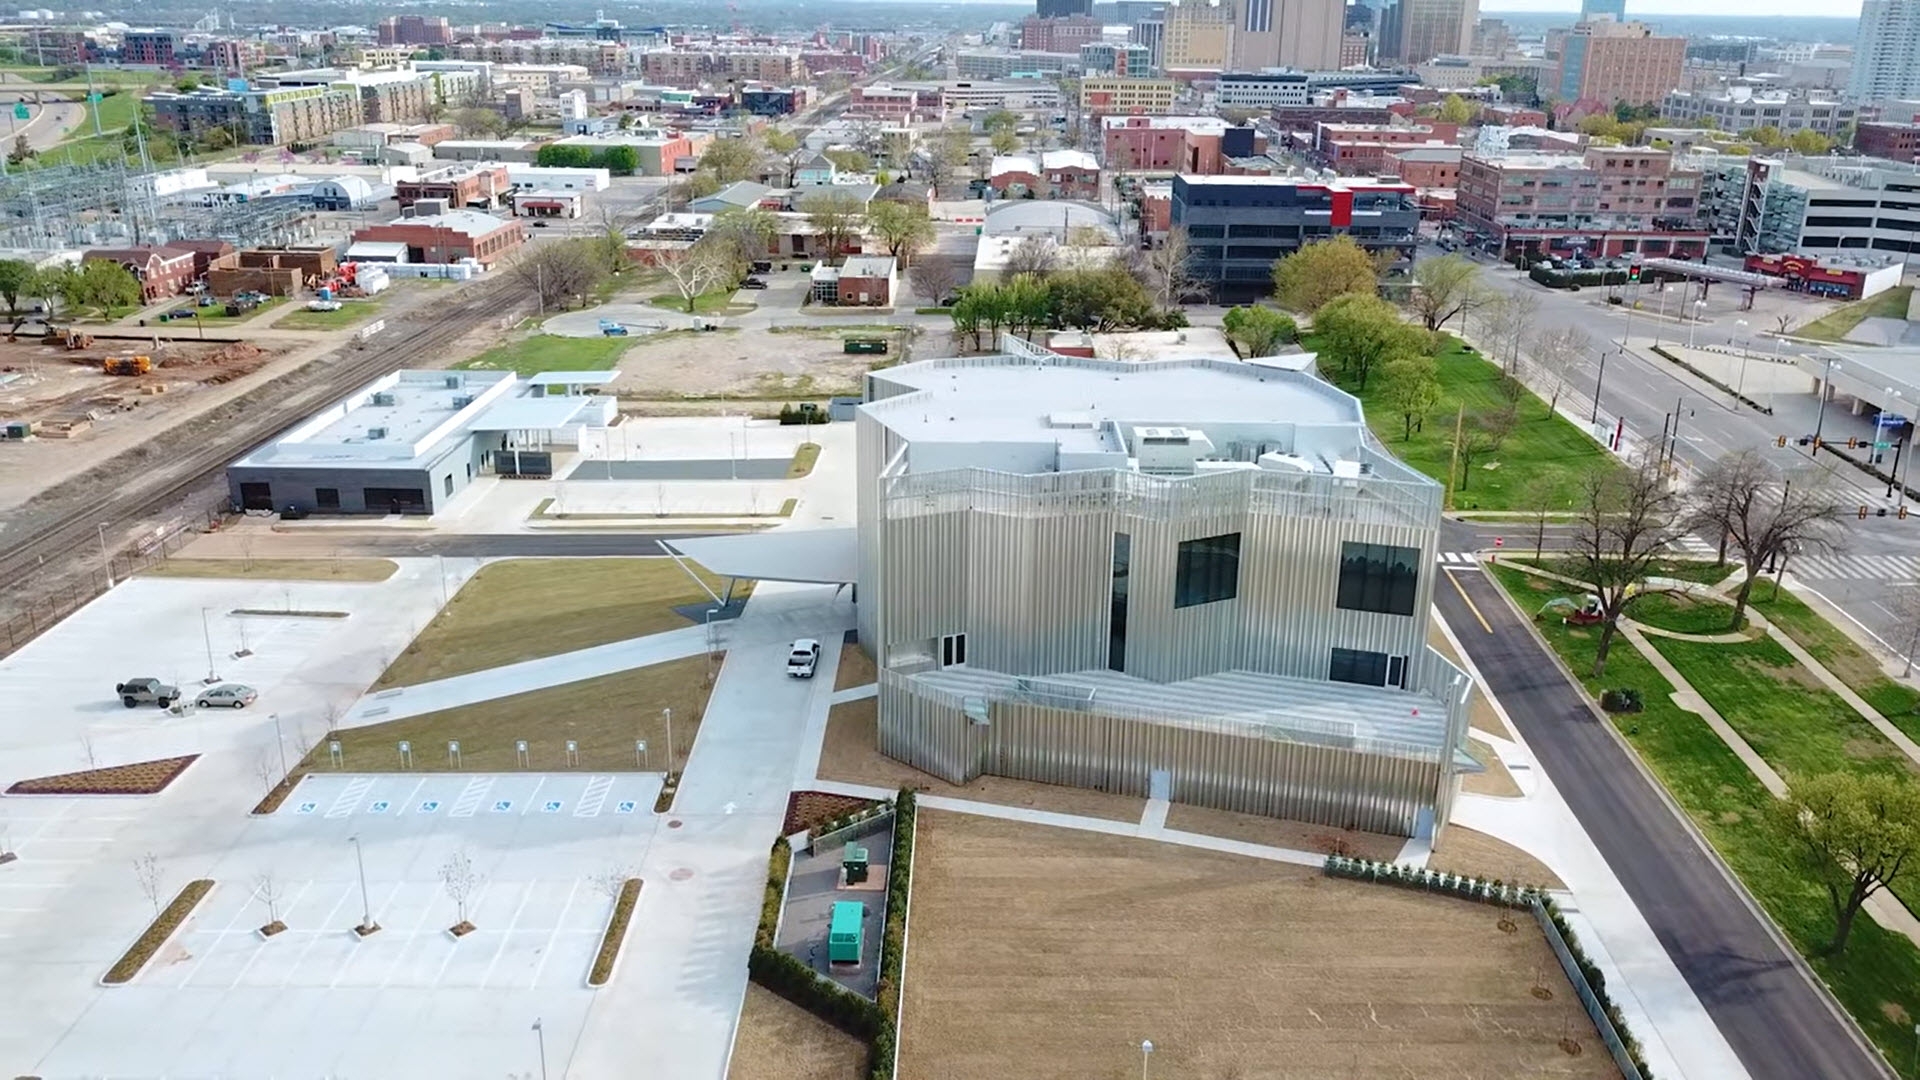 Oklahoma Contemporary Arts Center Aerial